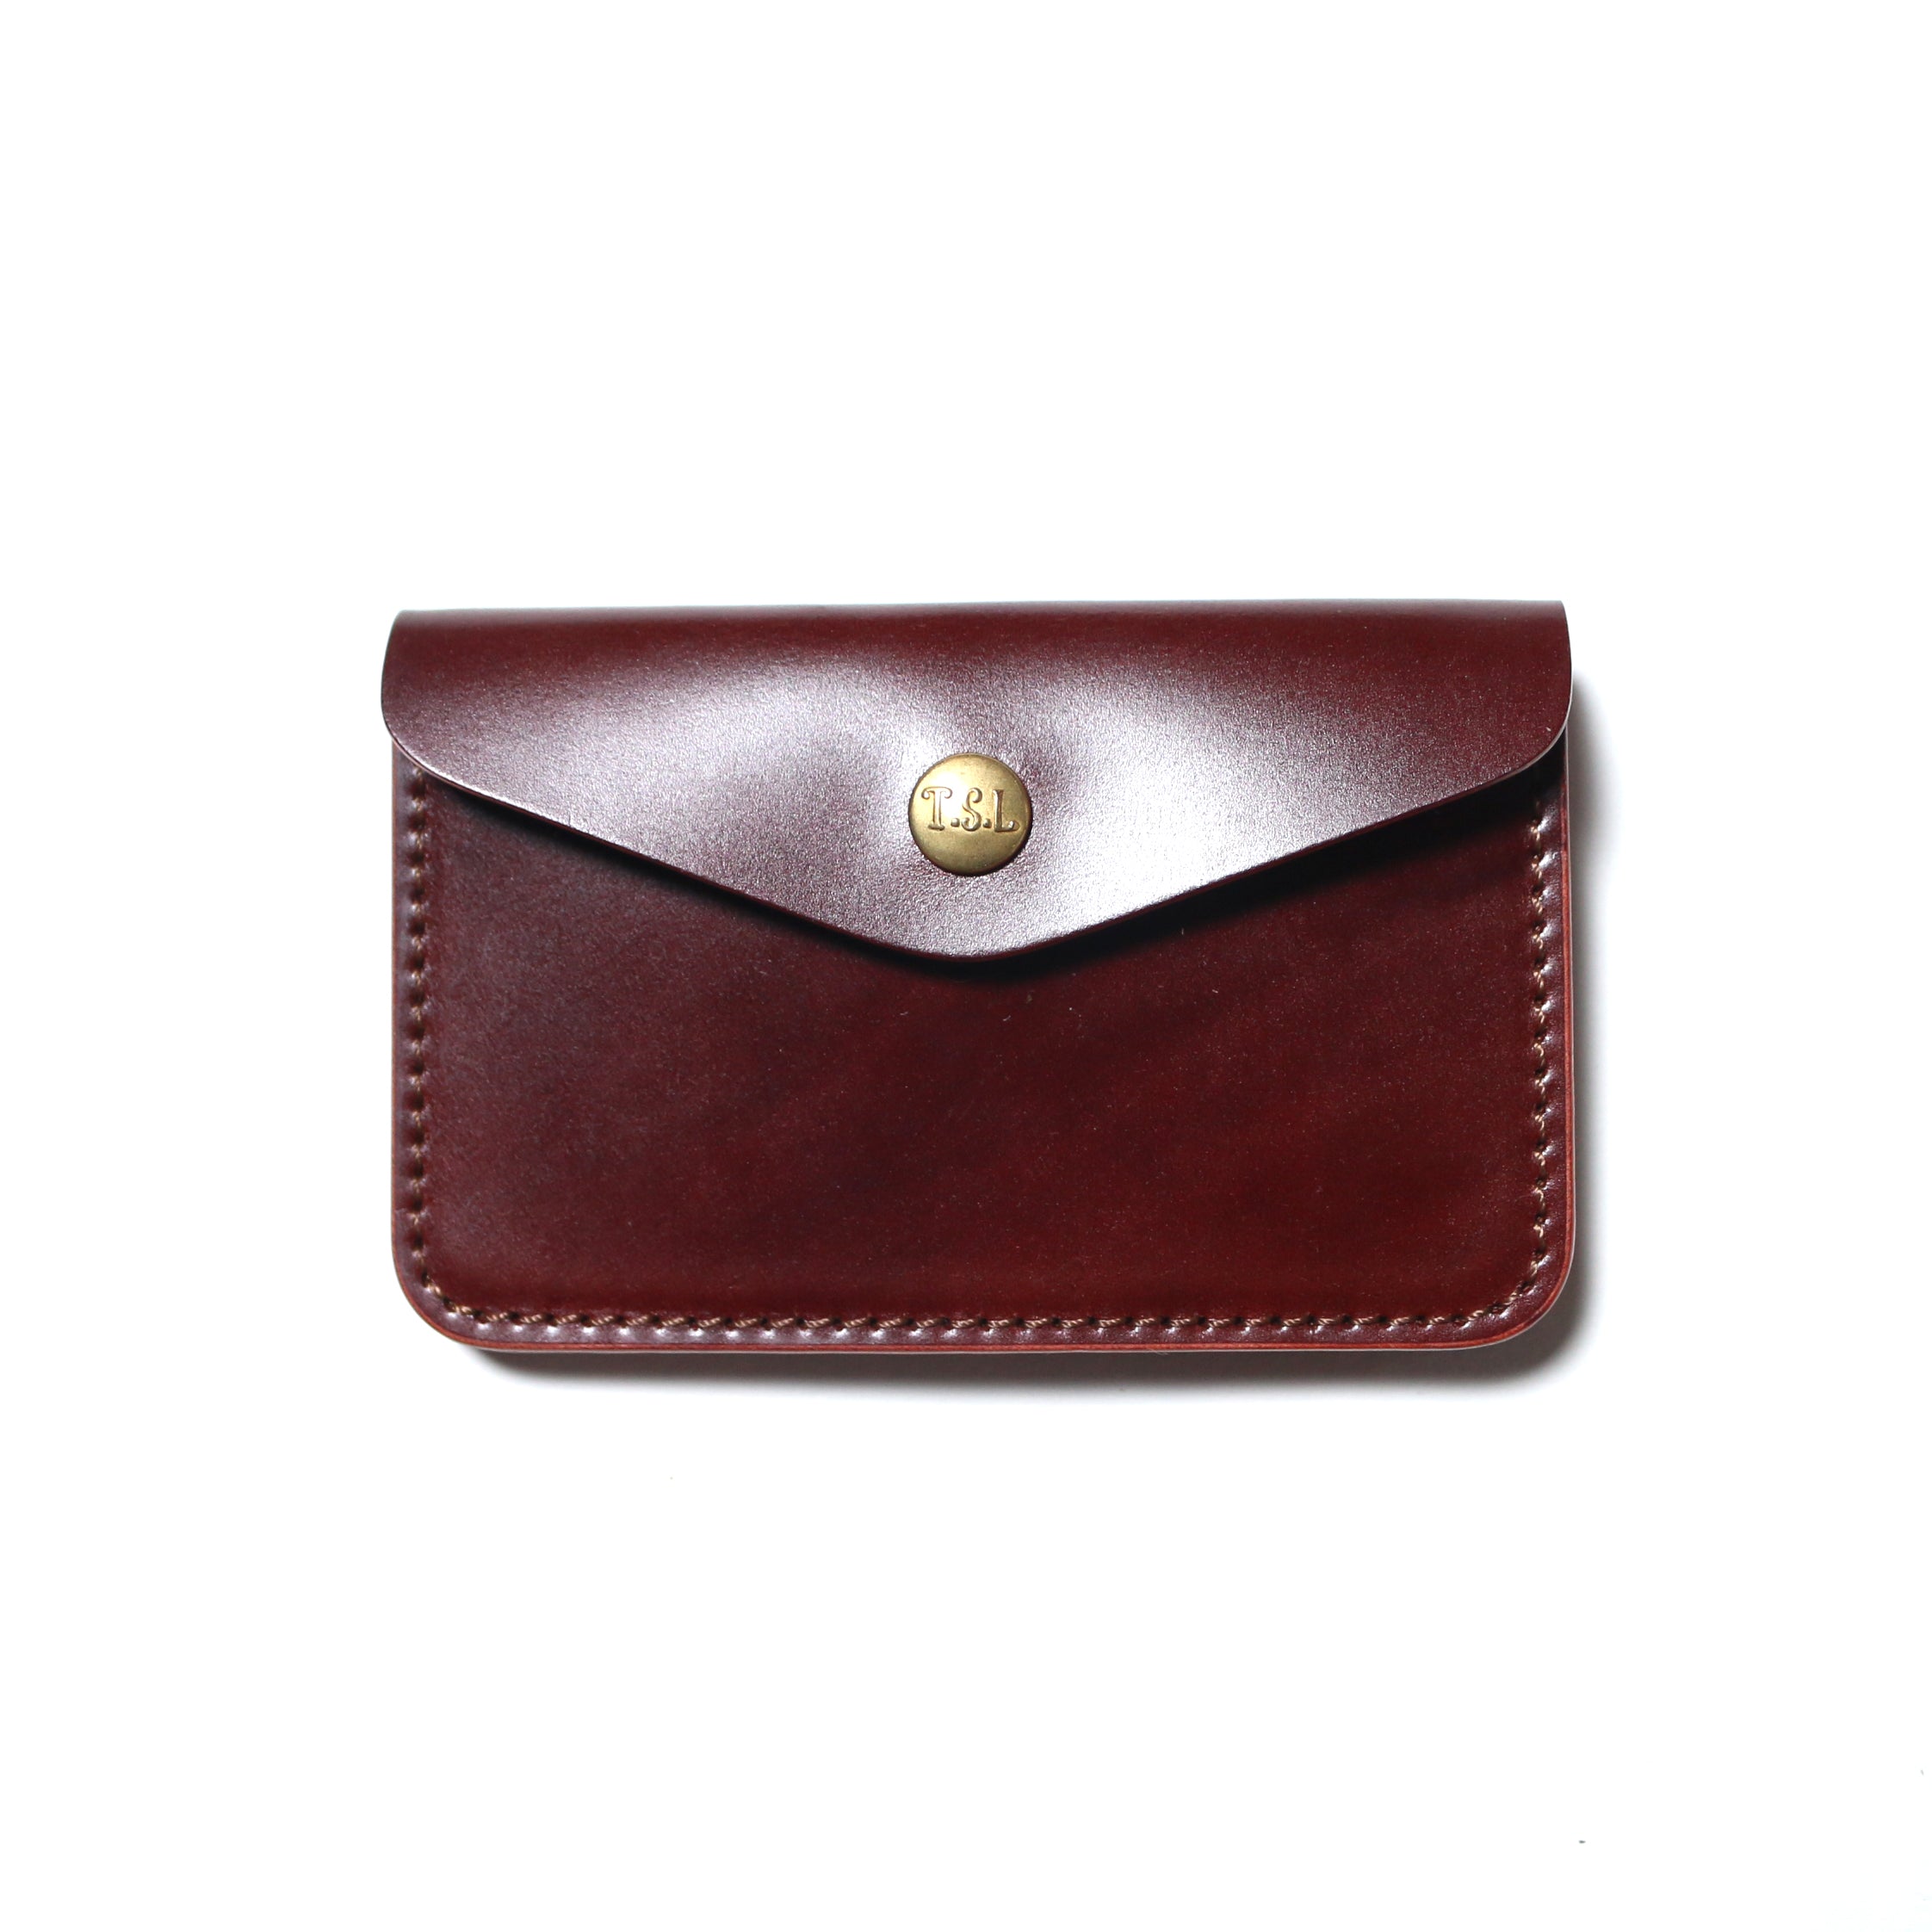 SL250 cordovan  traveler's small purse